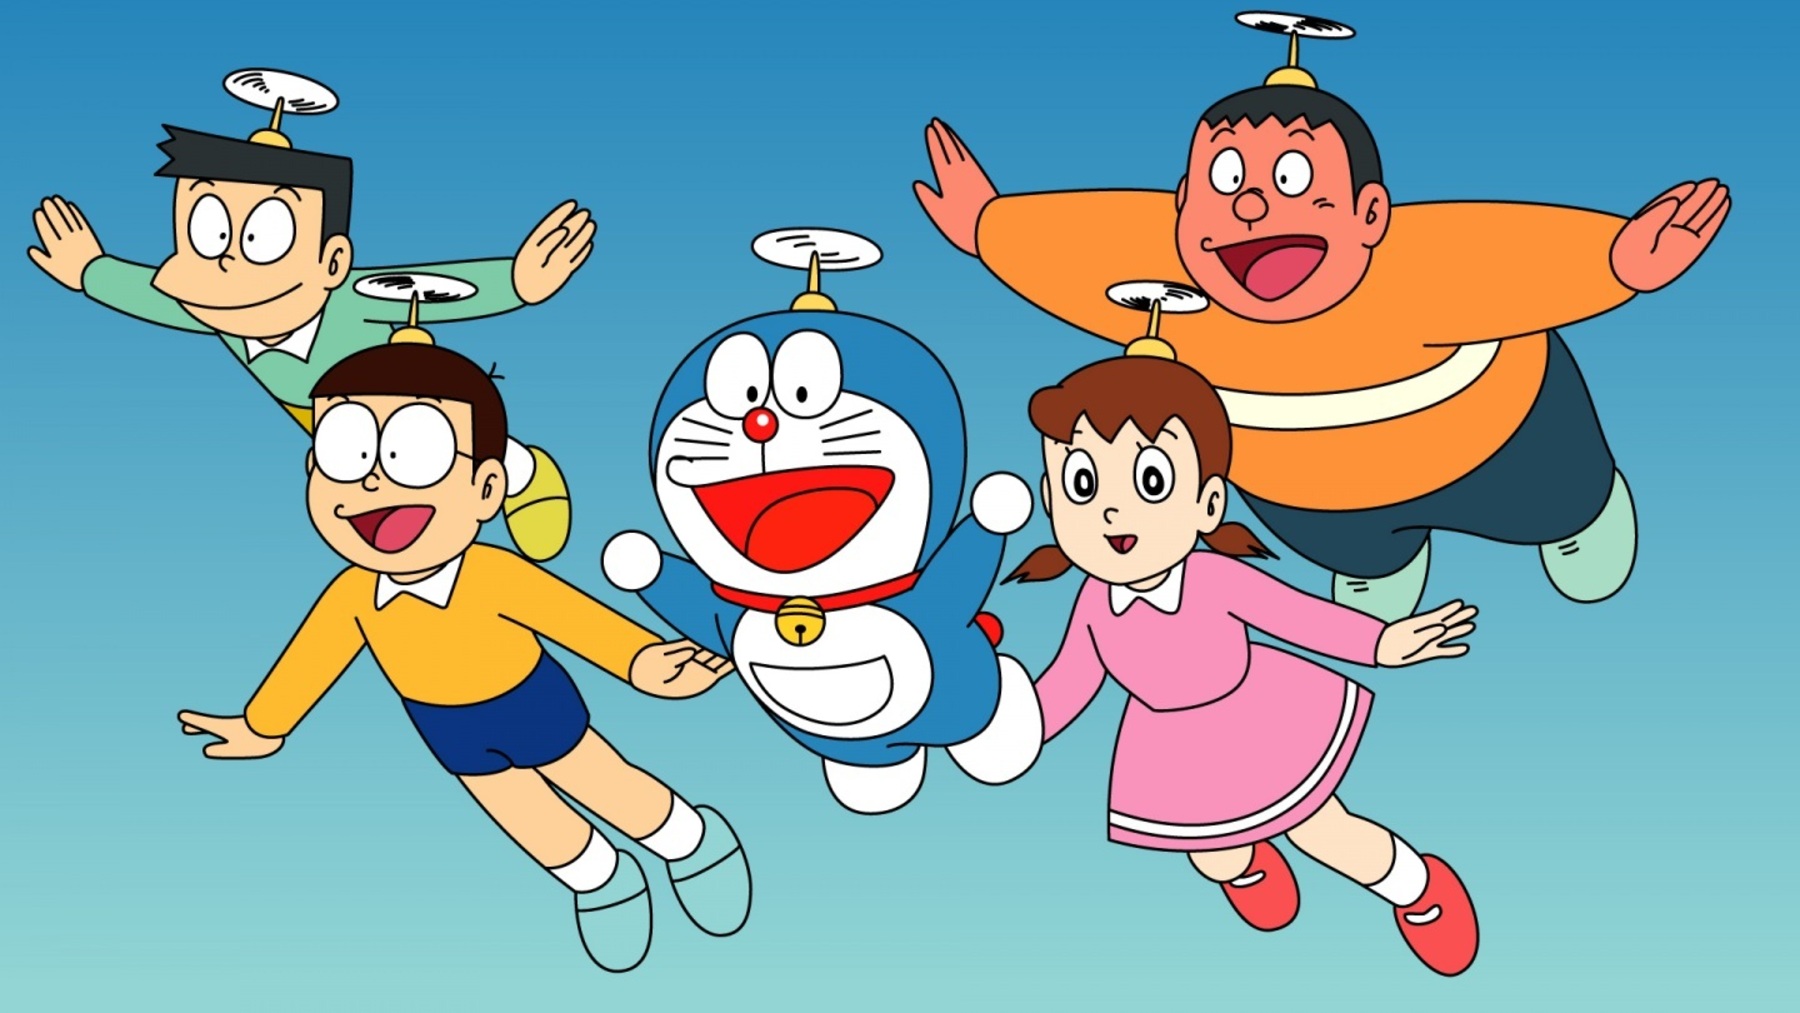 50 aniversario: Doraemon celebra su cumpleaños en Castelló, Ocio y cultura